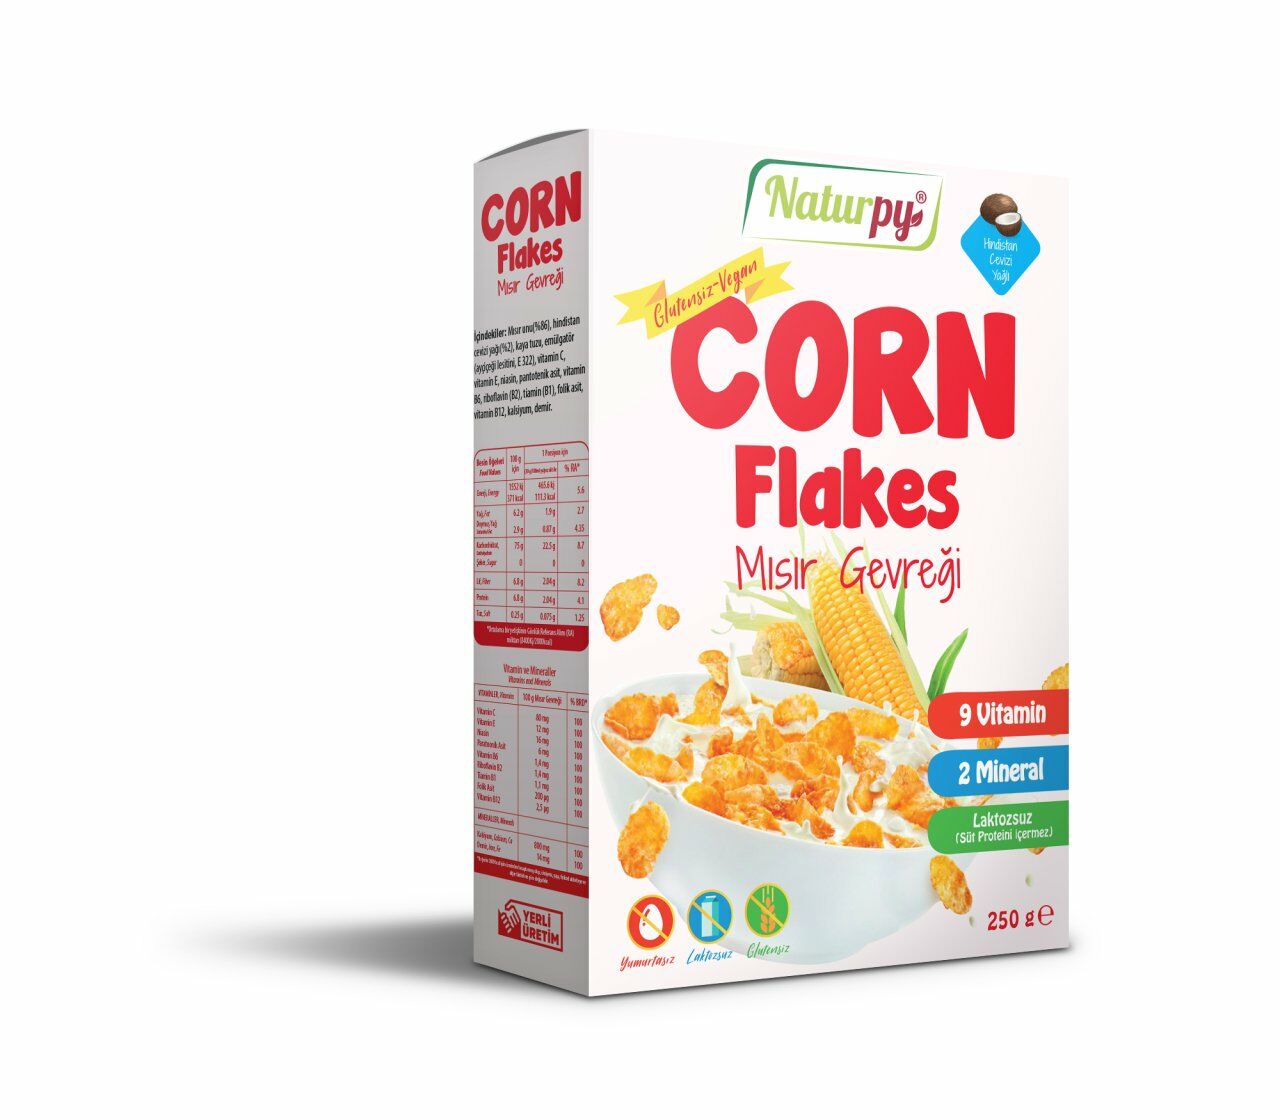 Glutensiz Vegan Laktozsuz Corn Flakes - Mısır Gevreği 250 g (Hindistan Cevizi Yağlı)